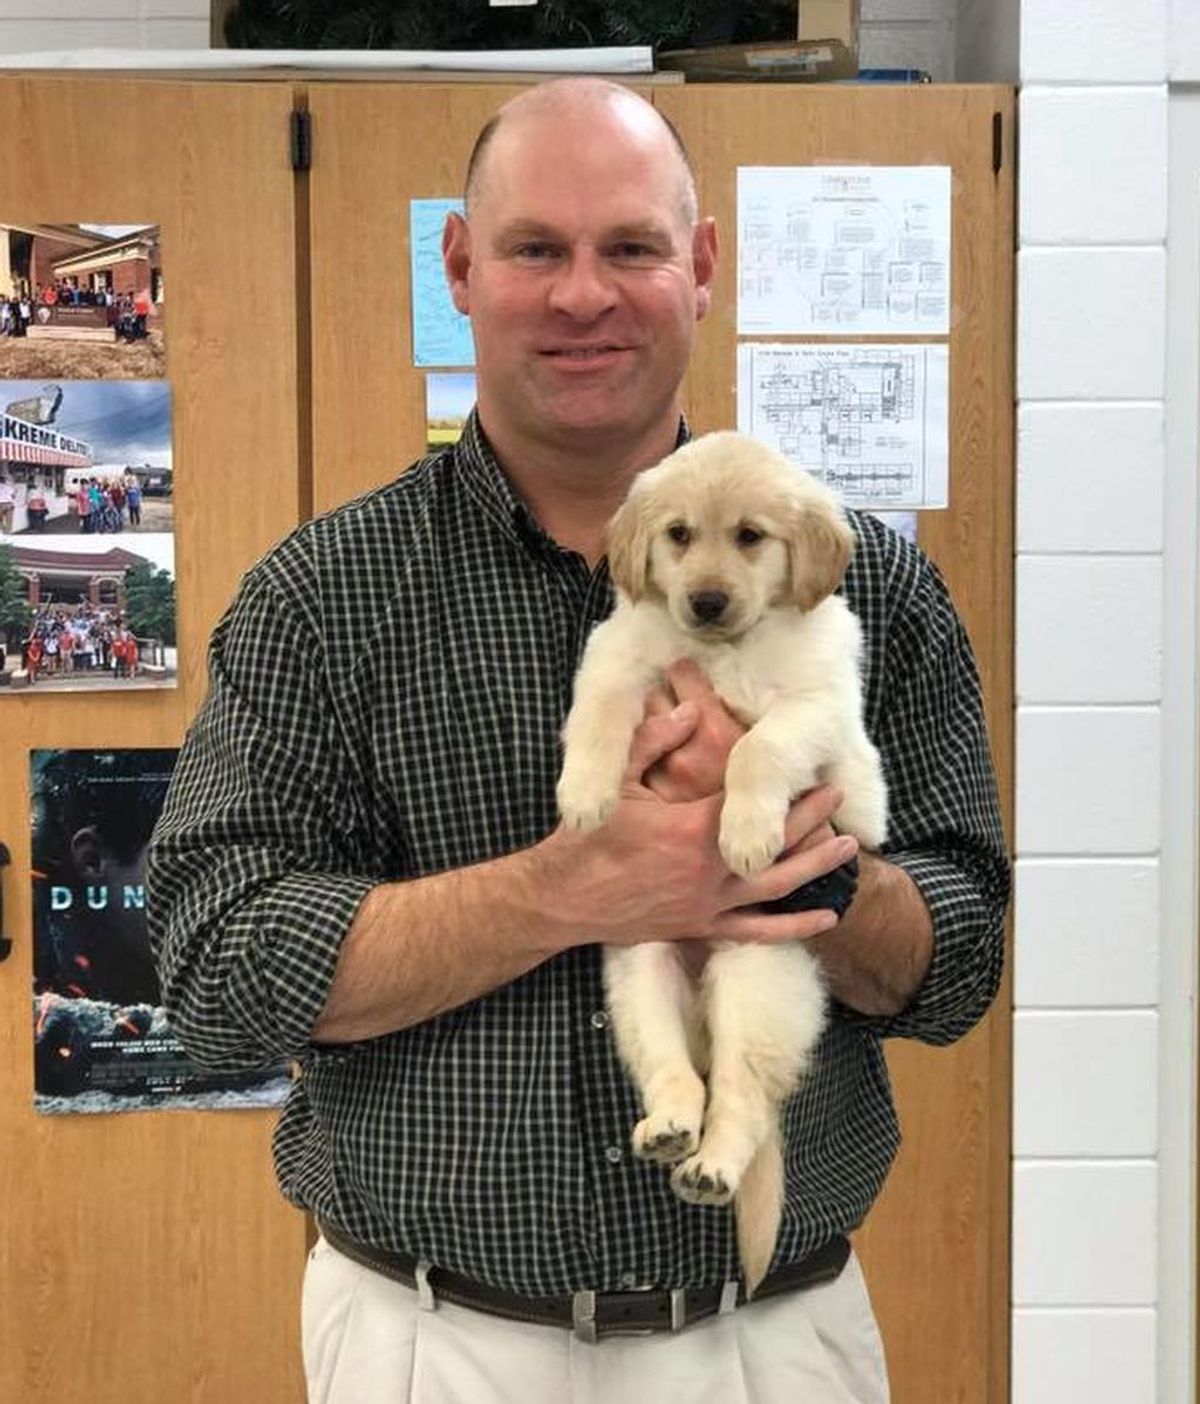 Sorprenden a un profesor que perdió a su perro regalándole un cachorro